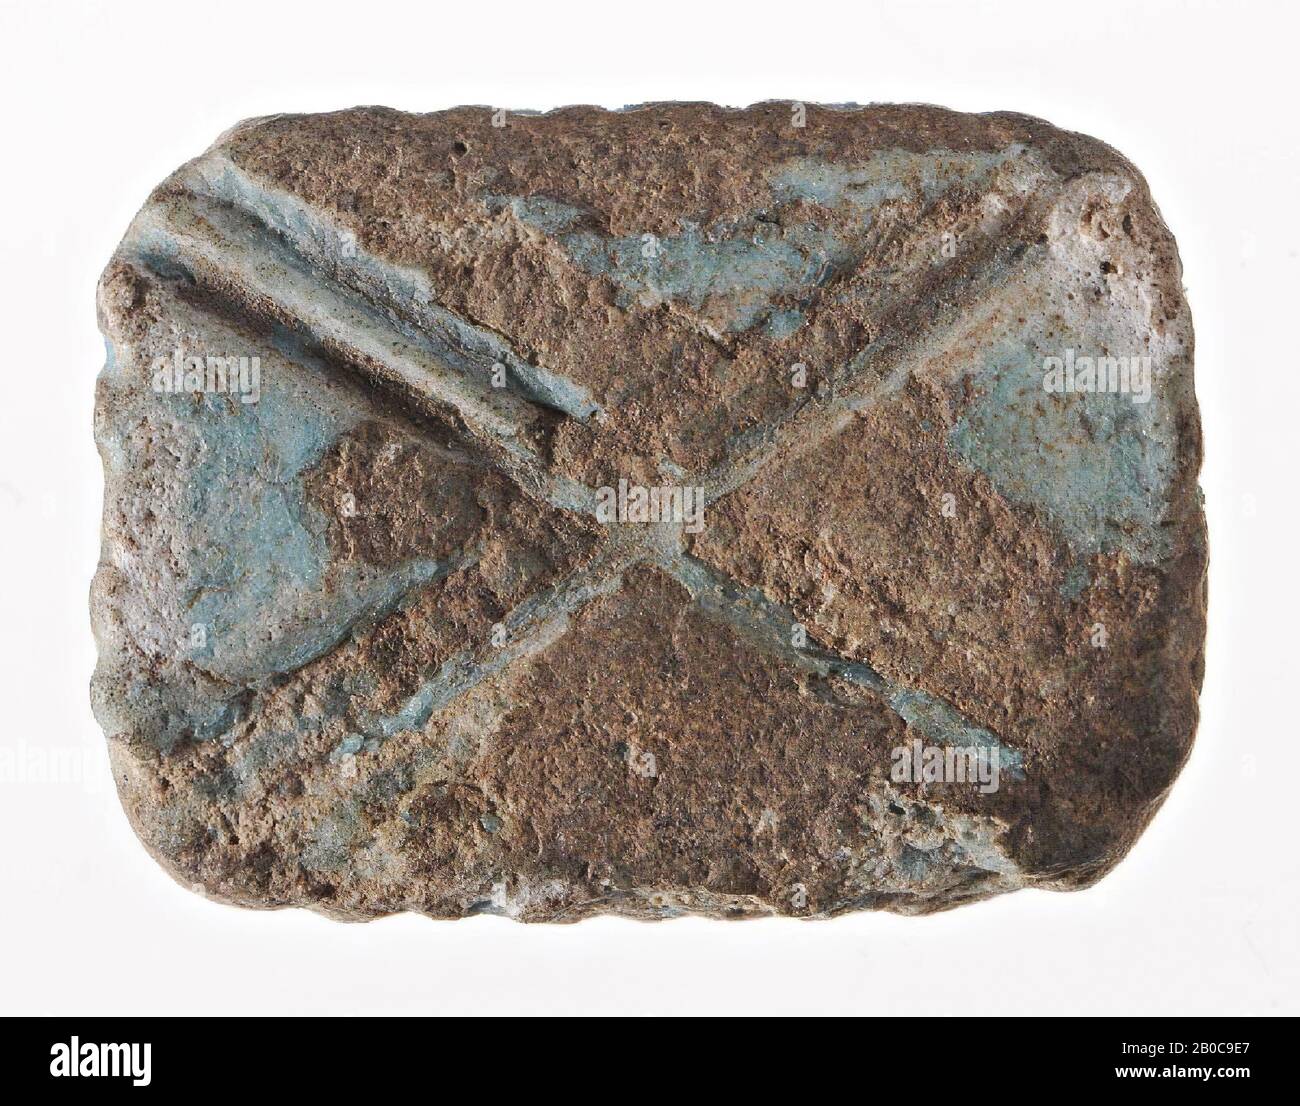 plaque, rectangle, diagonal line, seal, plaque, faience, 1.8 cm, Egypt Stock Photo